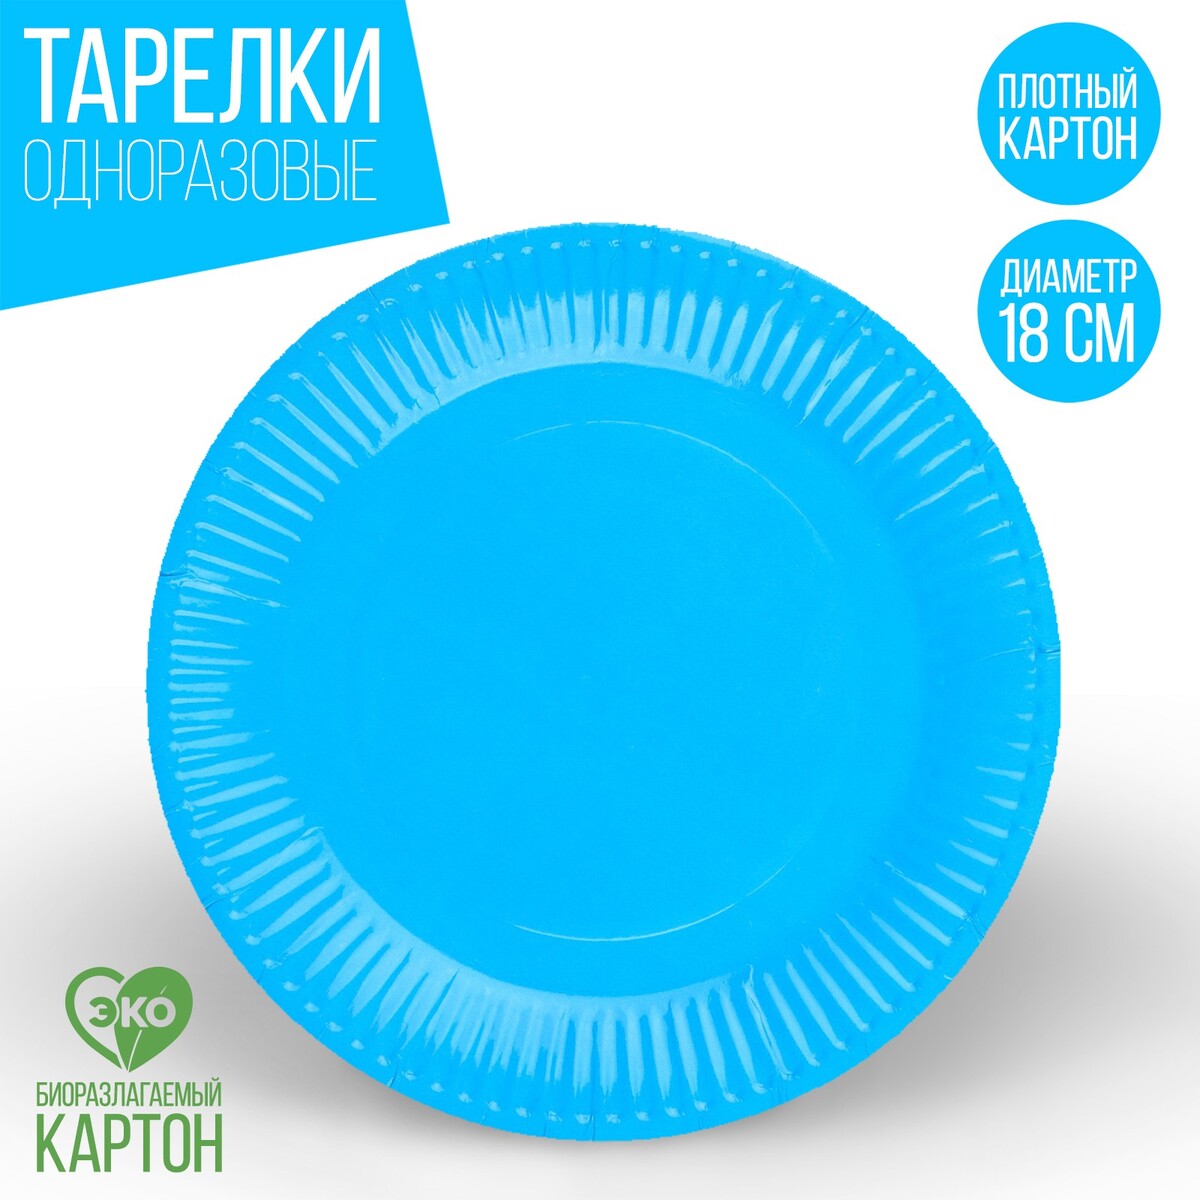 Тарелка одноразовая бумажная однотонная, голубой цвет 18 см, набор 10 штук тарелка круглая wilmax spiral d 20 5 см голубой